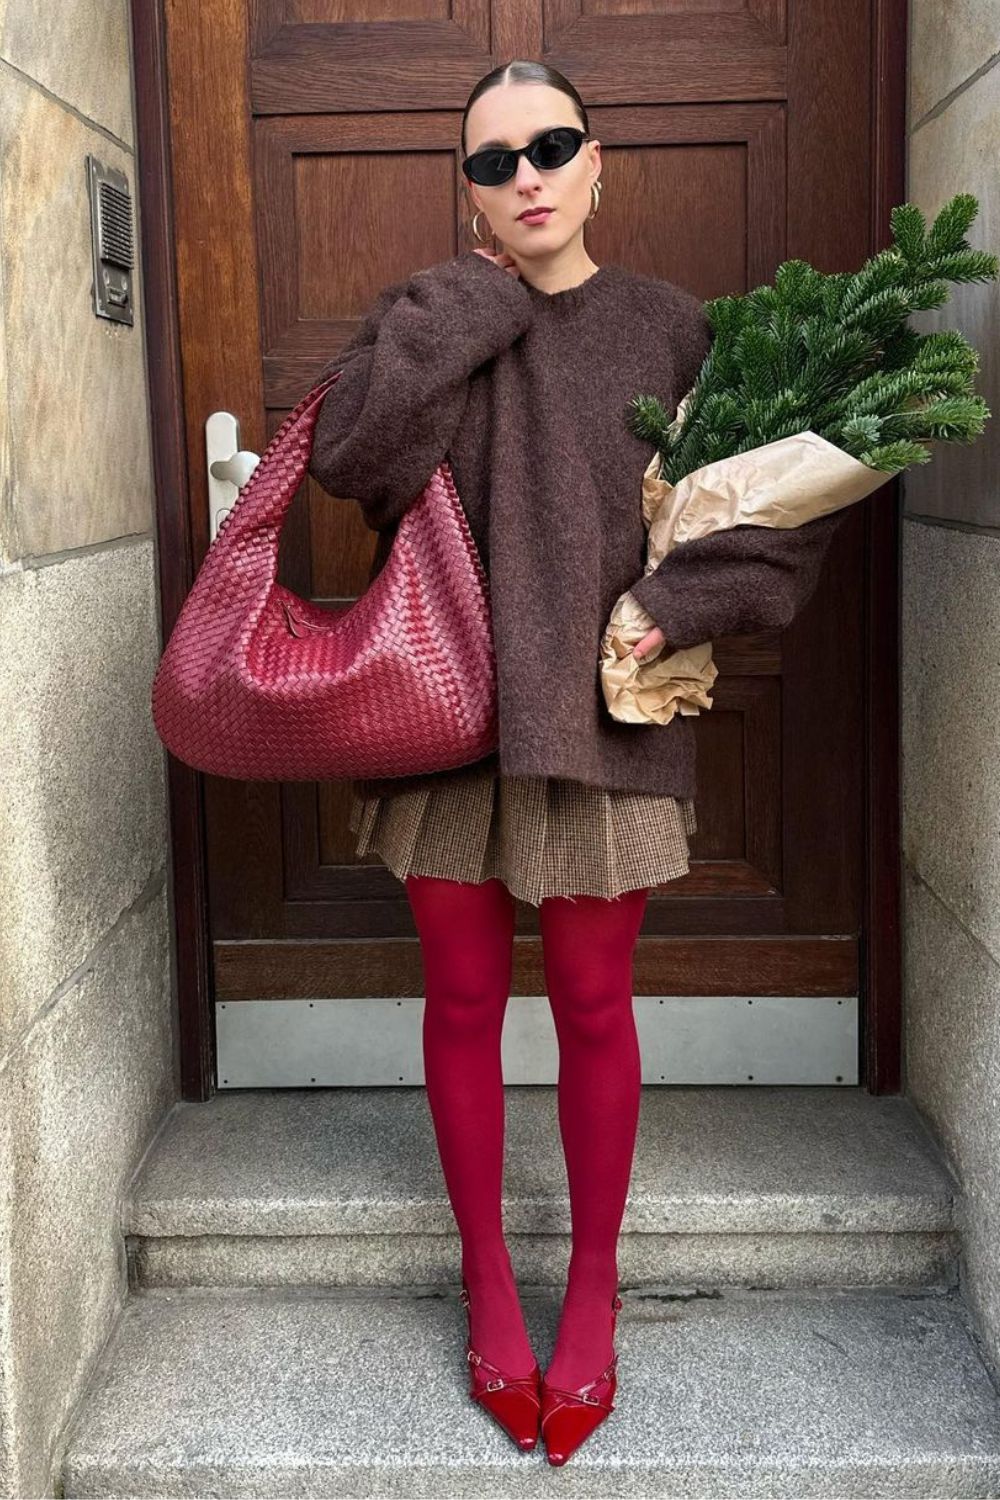 Suéter oversized marrom, sia plissada, bolsa e meia-calça vermelha com slingback